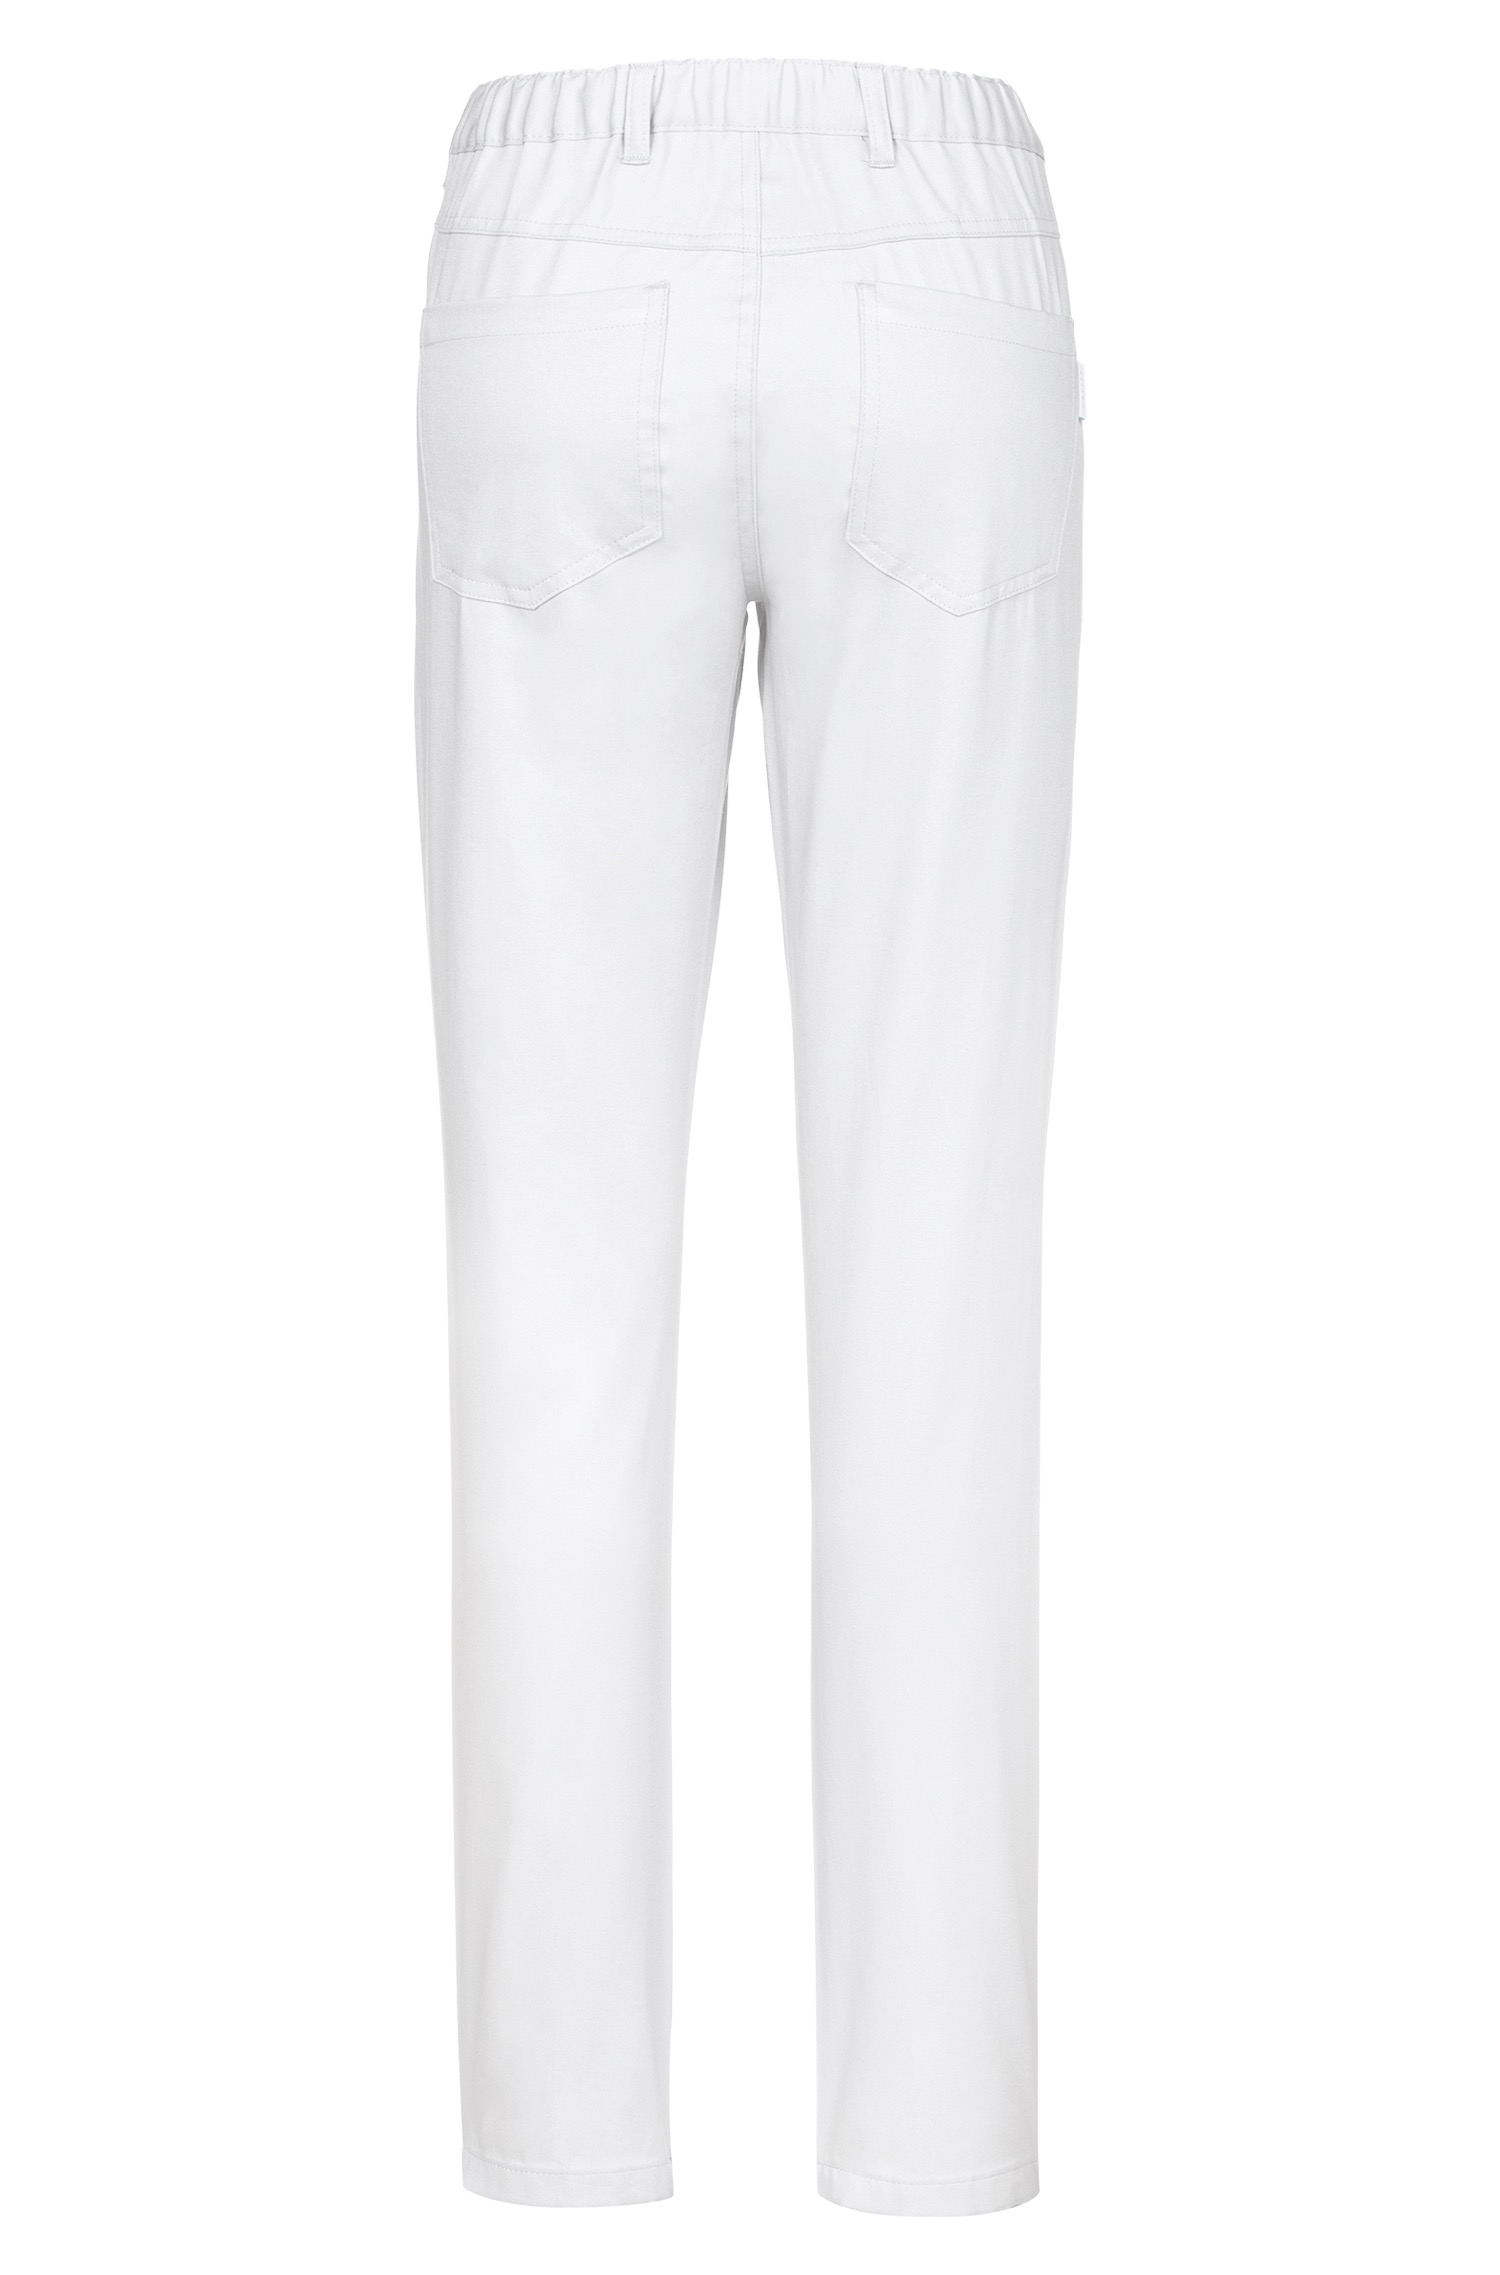 Damen-Hose aus Baumwolle mit Gummibund Greiff® Weiß 34